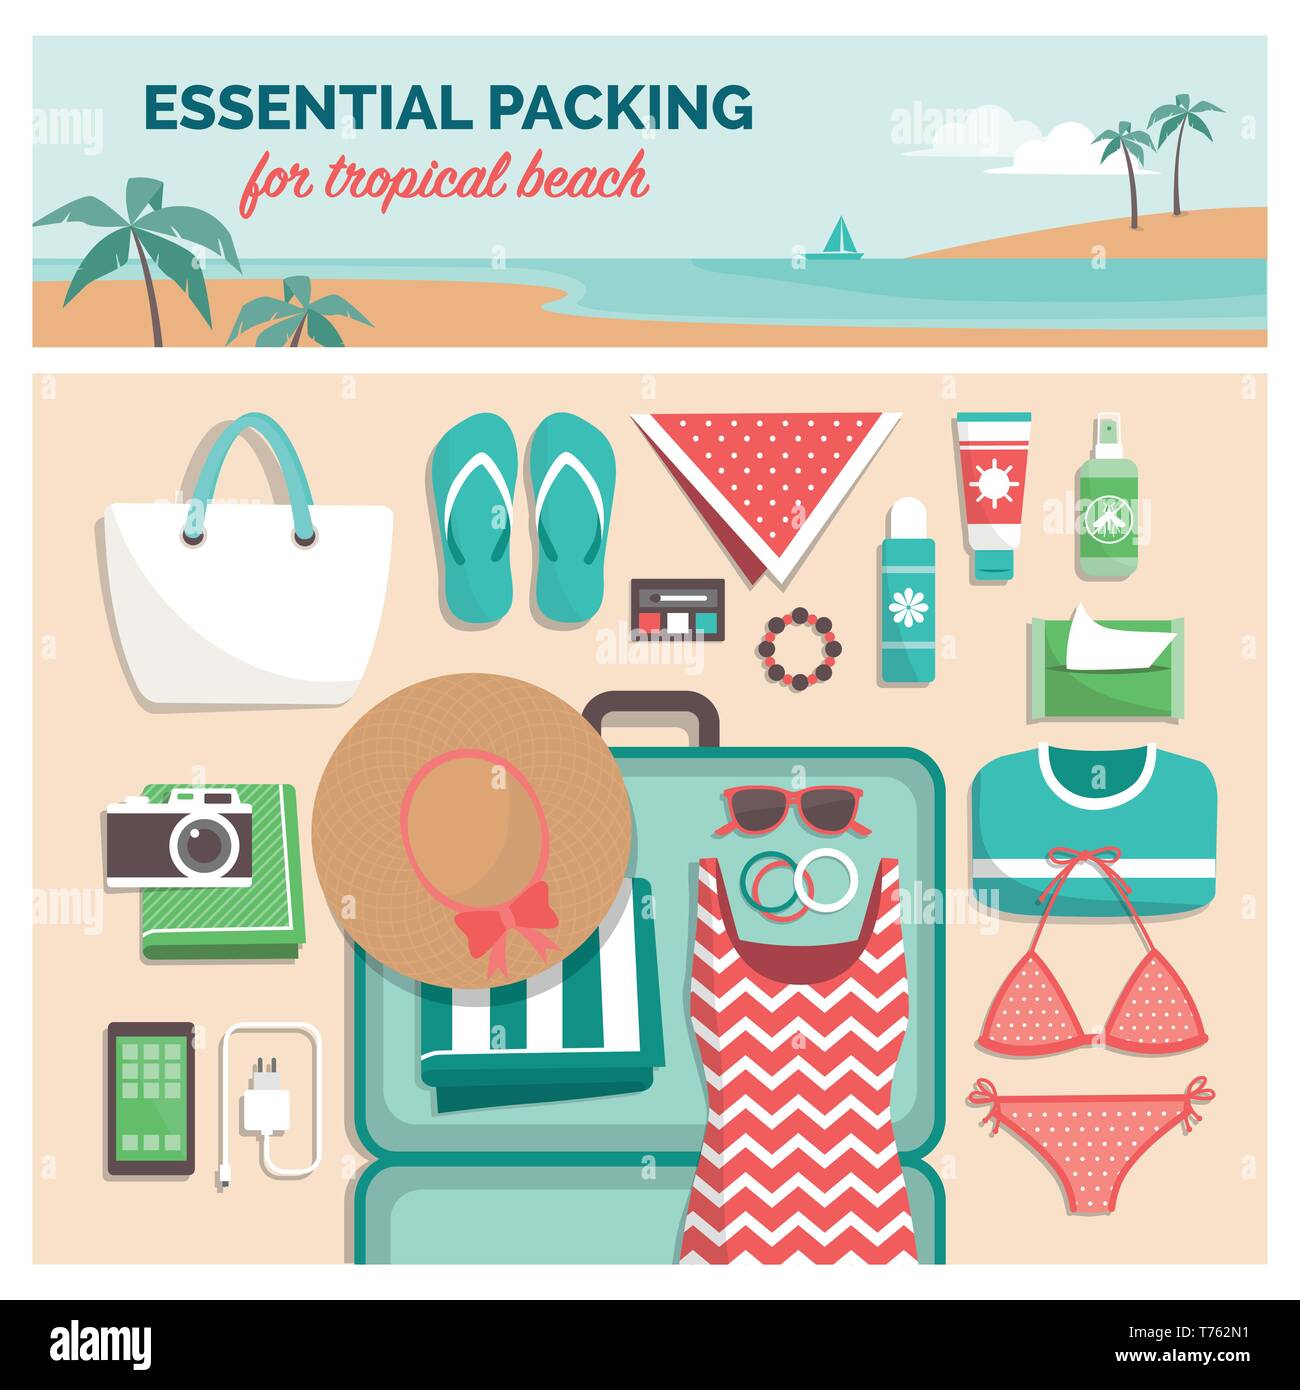 Wesentliche Verpackung für Tropical Beach: Packliste für einen Sommer Reisen Urlaub in exotischen Destinationen mit Koffer und flach Objekte Stock Vektor